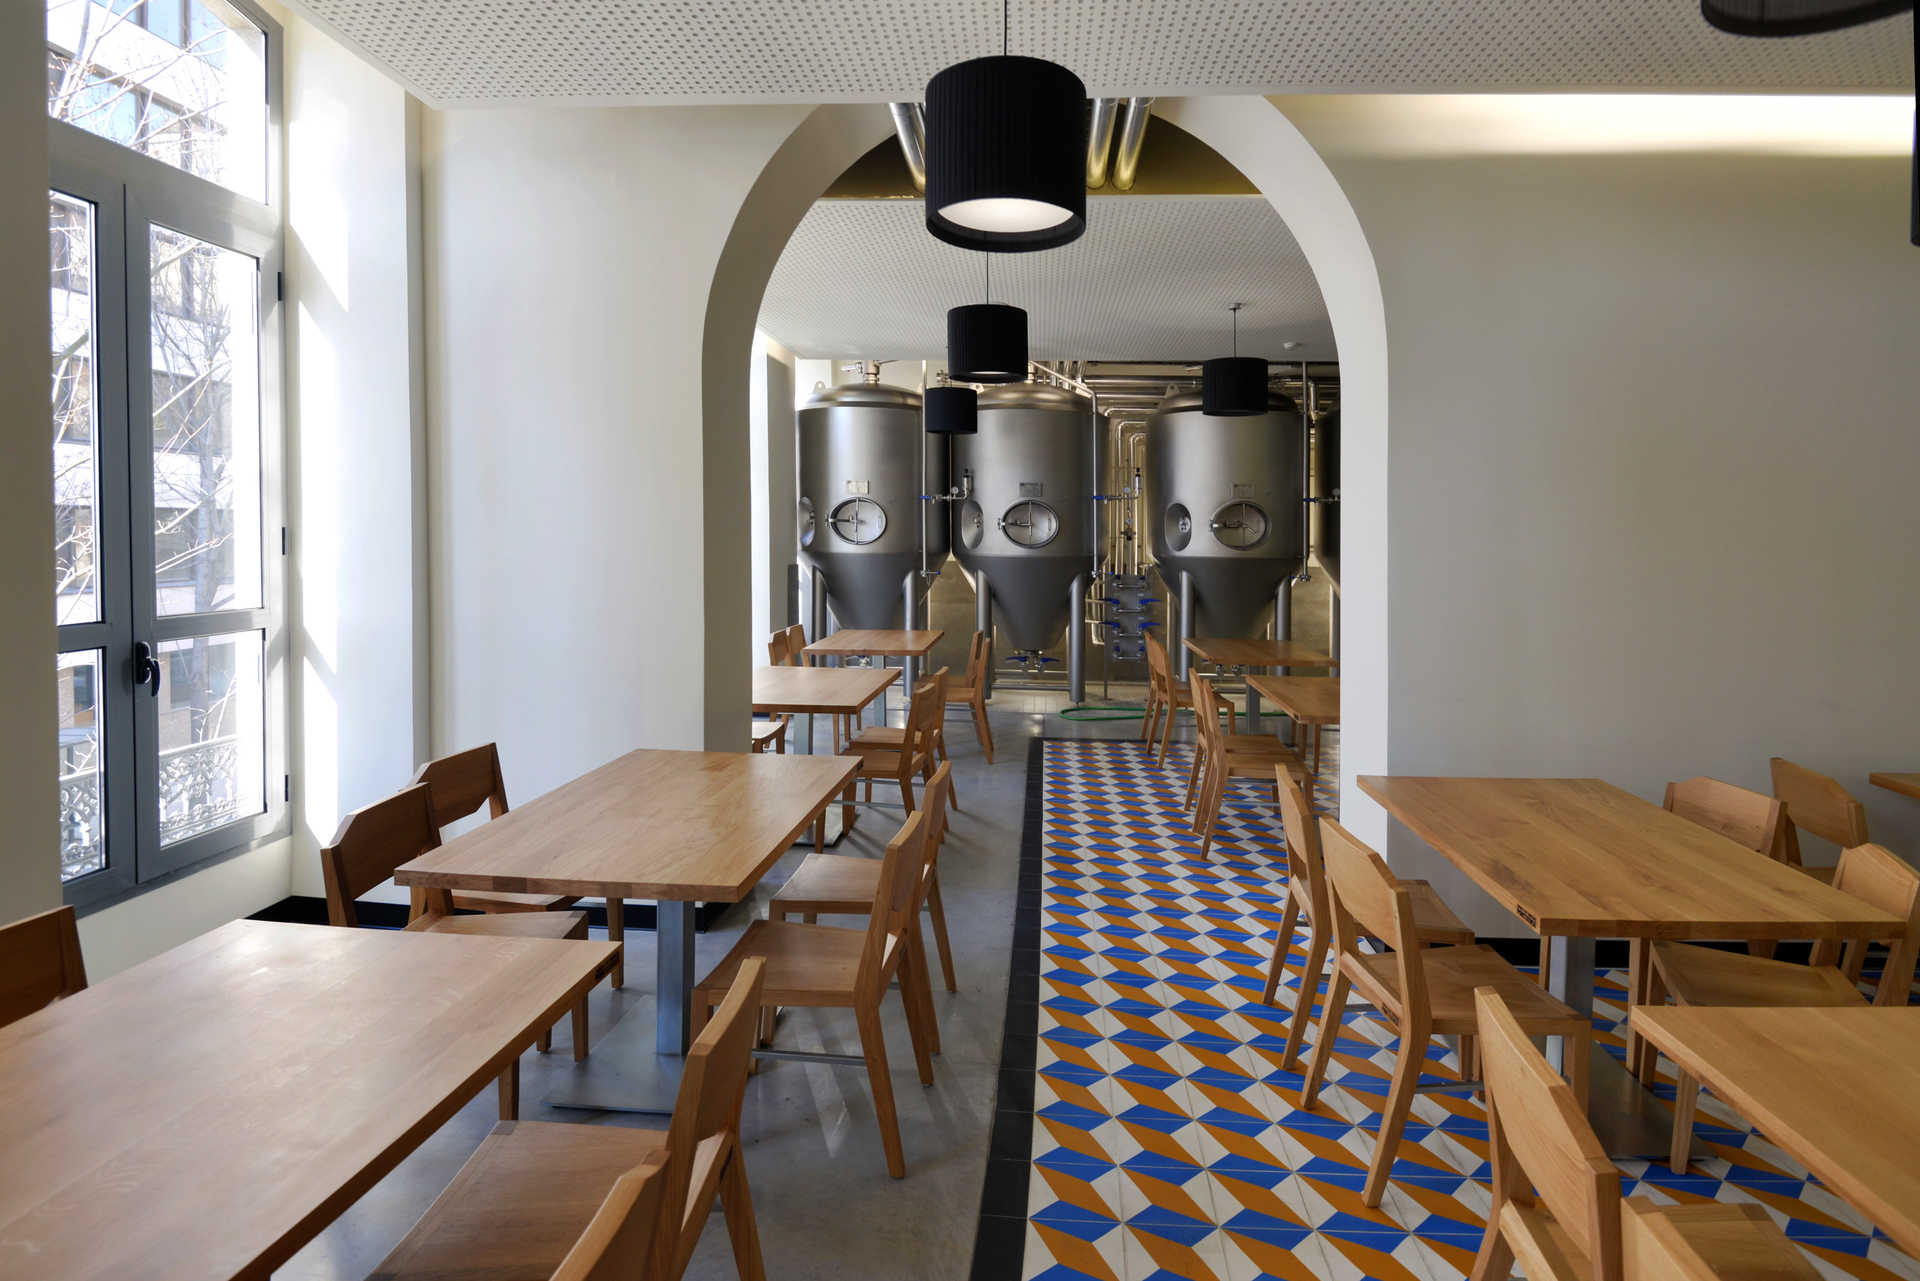 Fábrica de Cervejas Portuense é espaço com cervejaria e restaurante no Porto